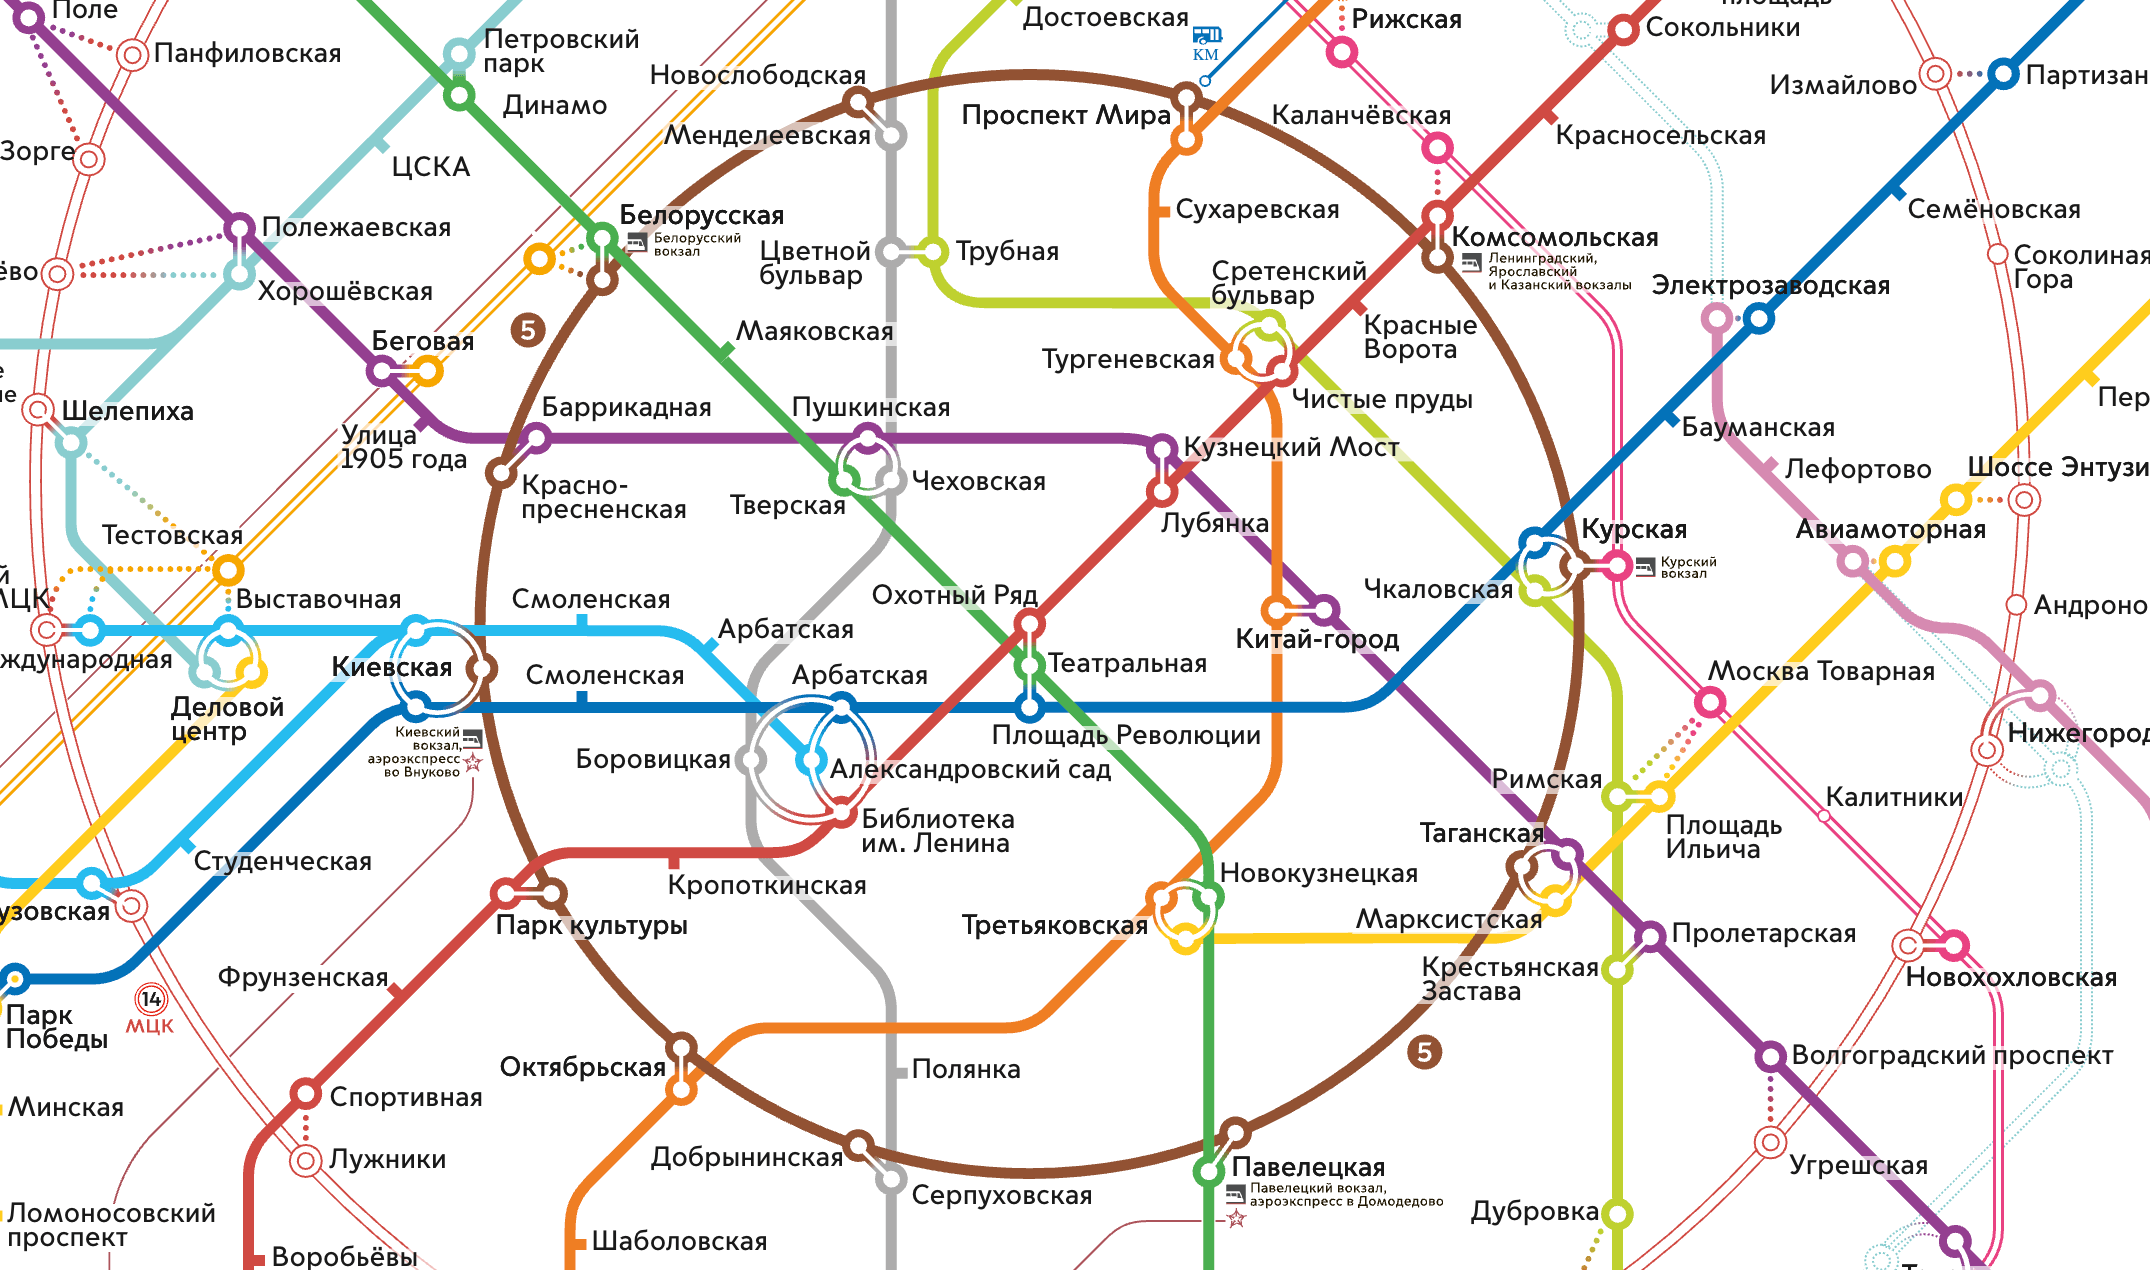 На схеме линии классического метро выглядят сплошными, без пустот. Источник: «Московский транспорт»